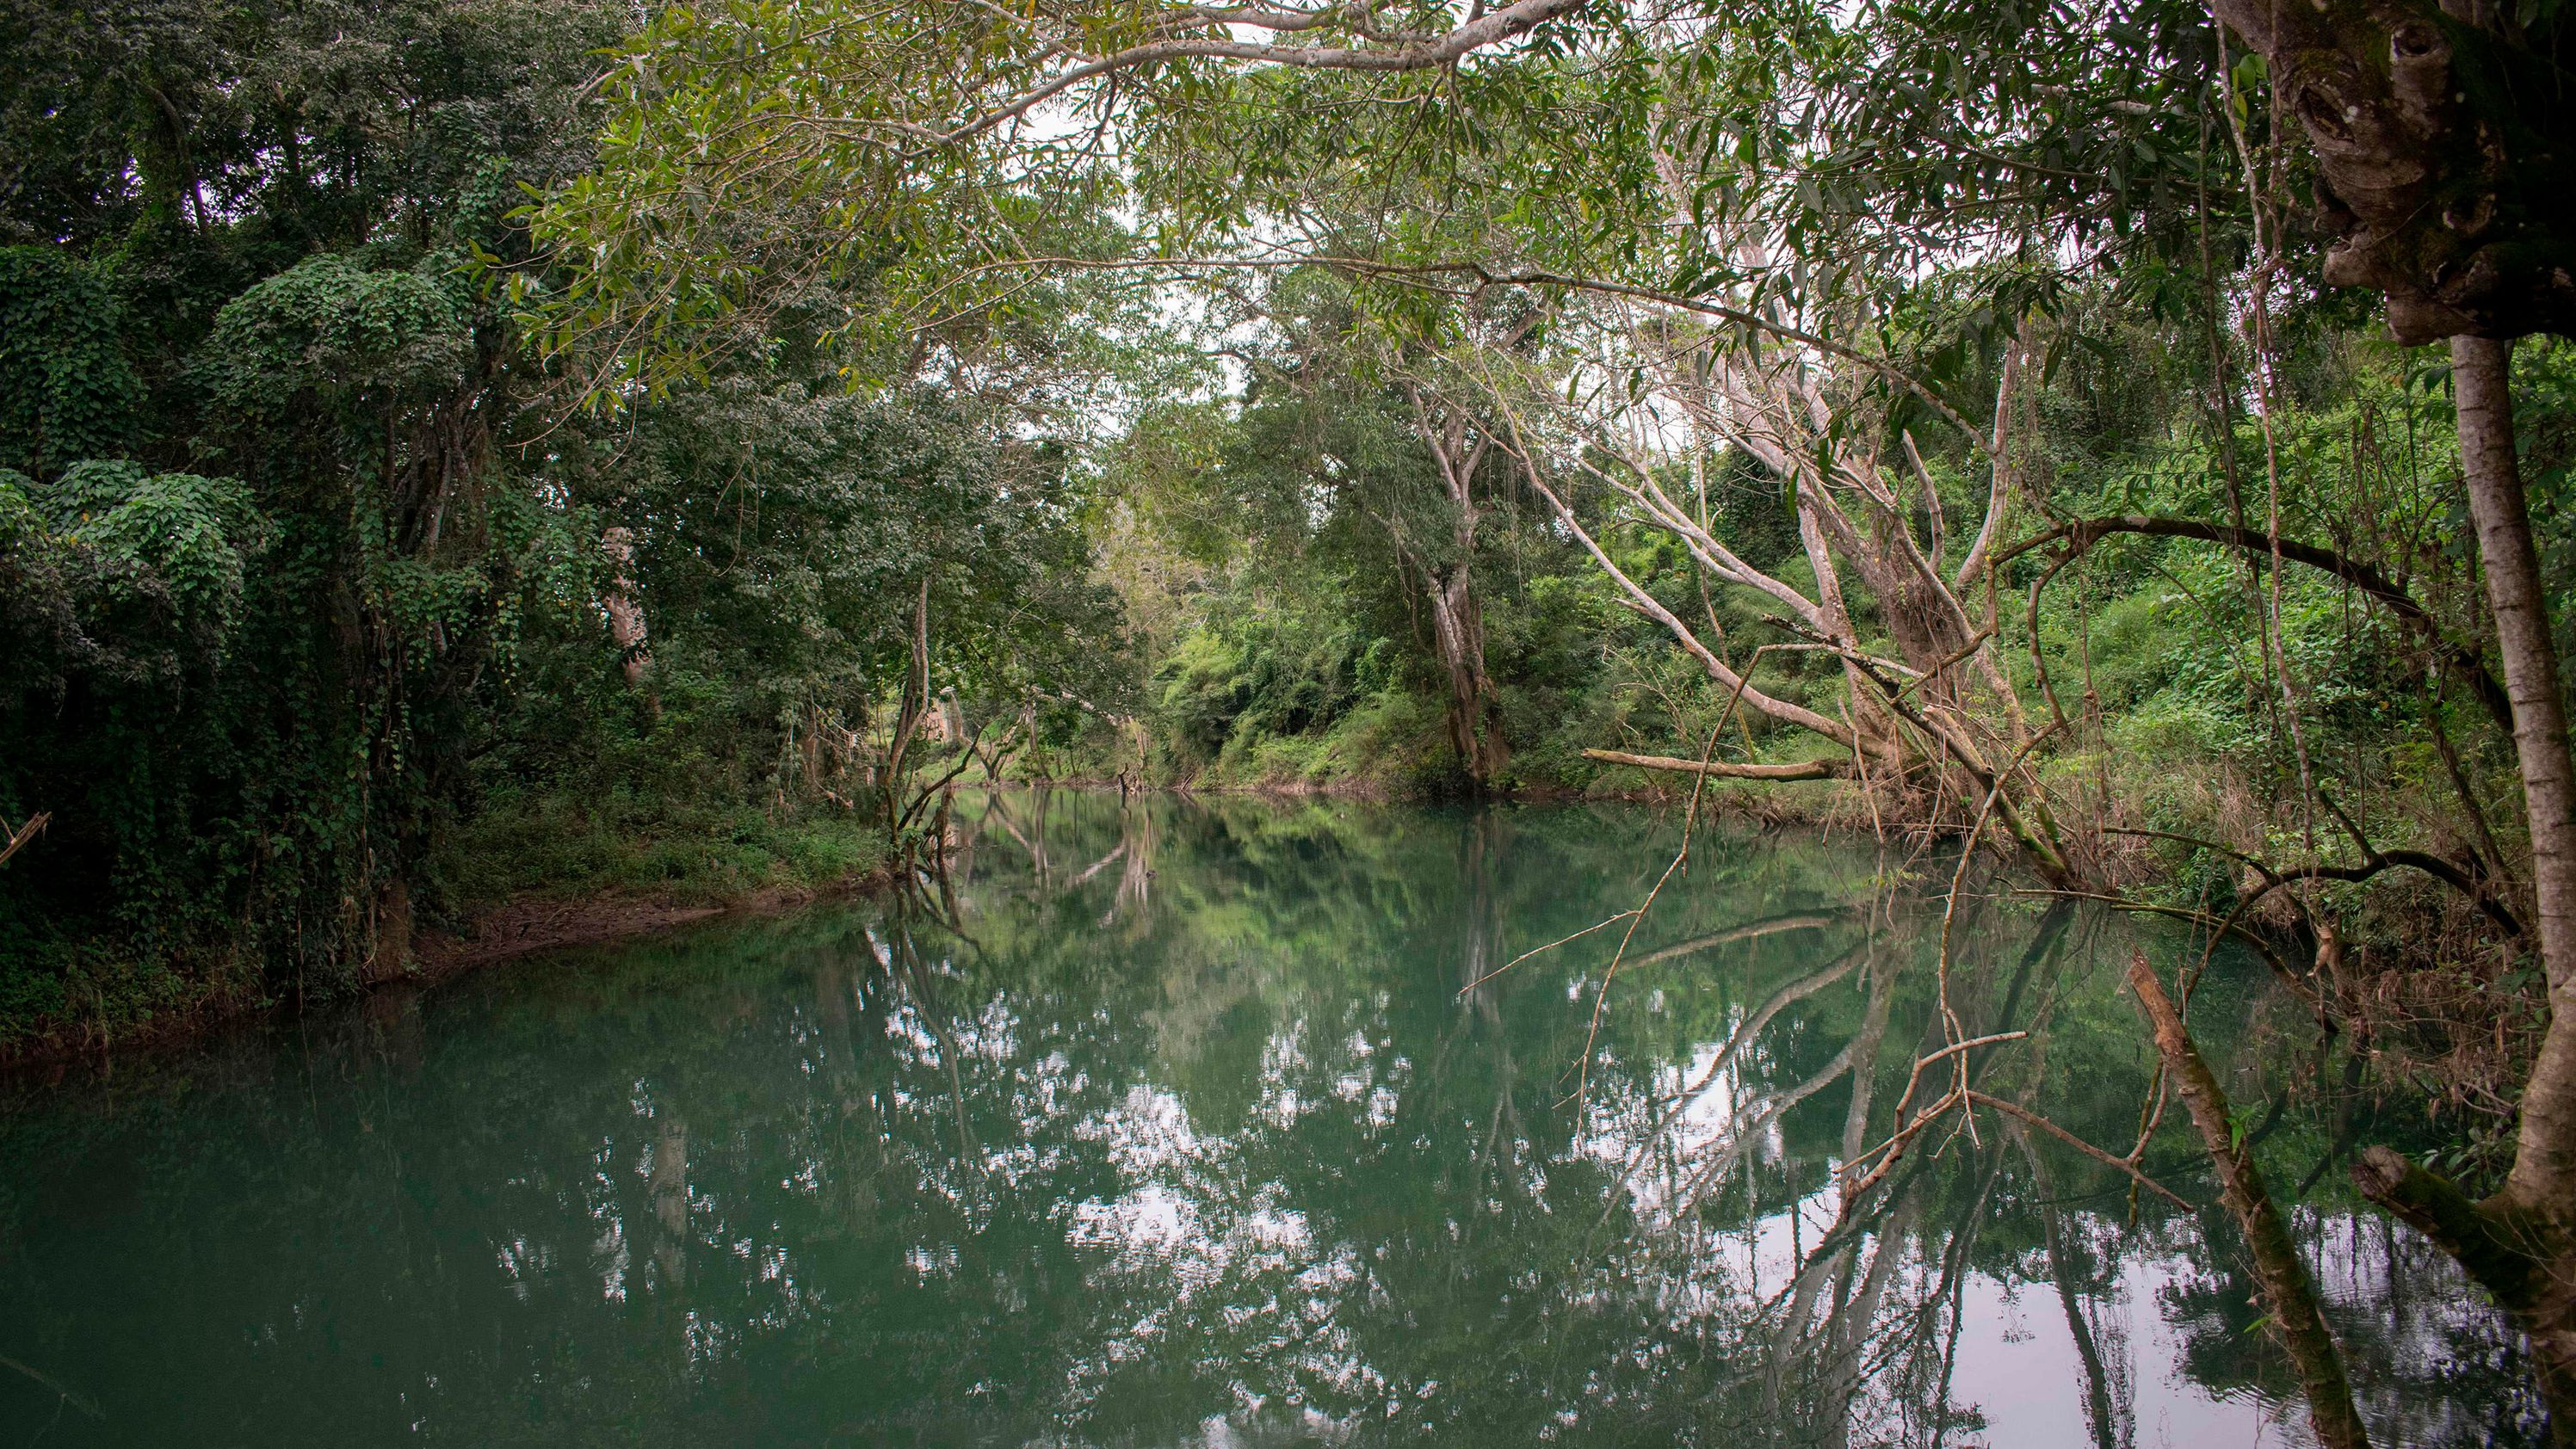 A view of the Mopan River in Melchor de Mencos, Guatemala.